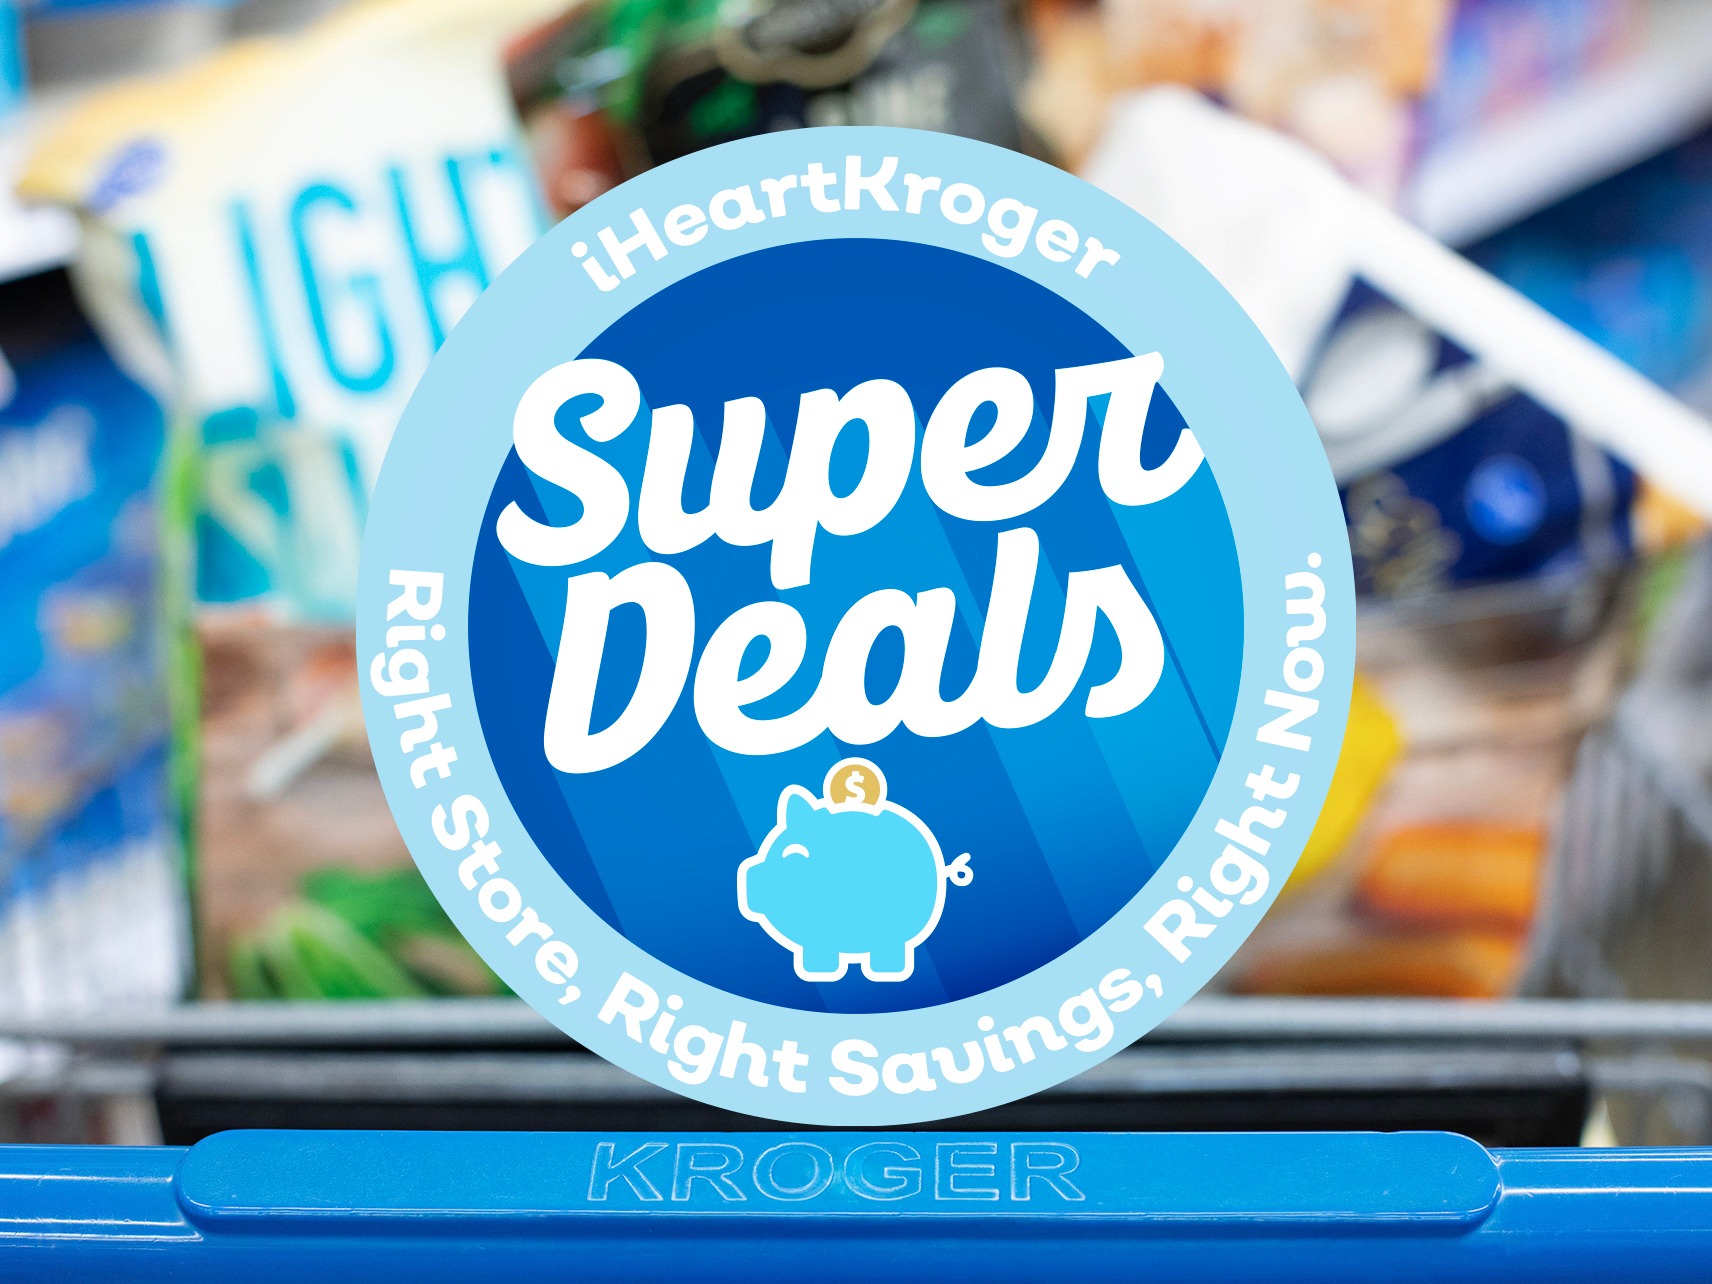 Kroger Super Deals Week Of 8/16 to 8/22